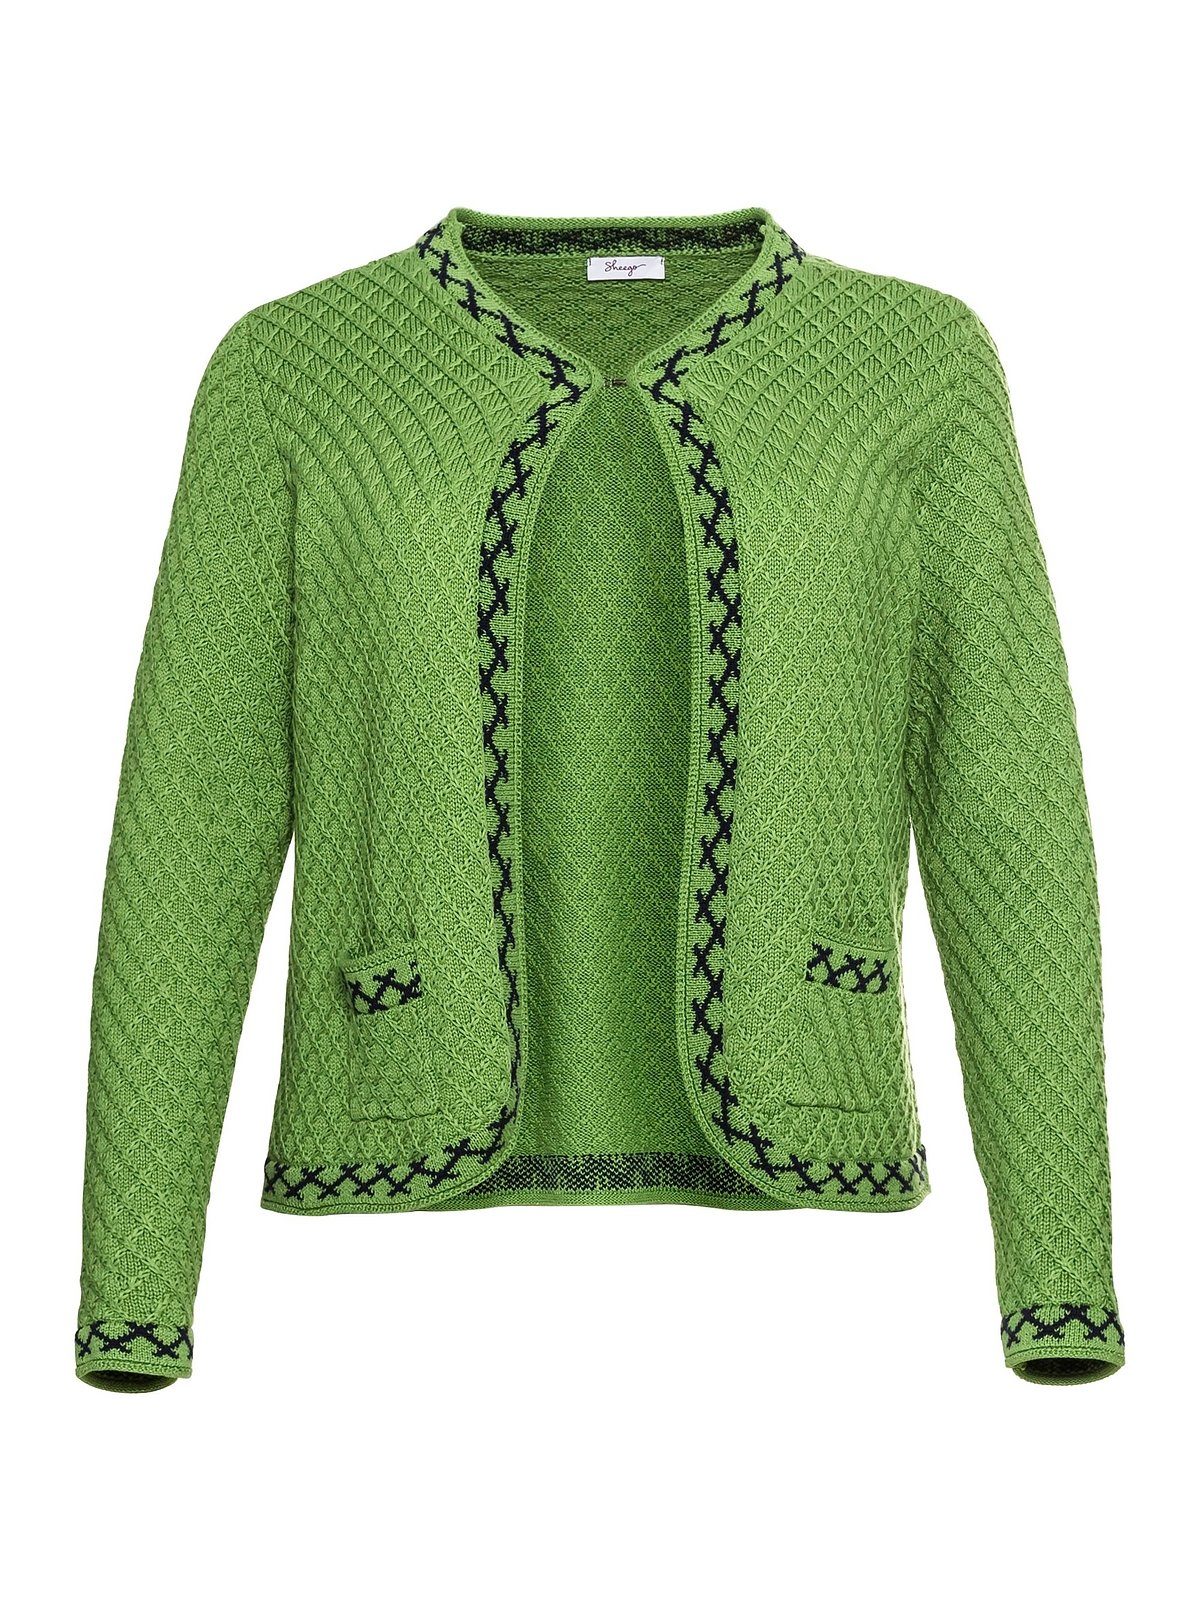 Sheego Strickjacke grün im Größen Große Trachten-Look mit Zierborte